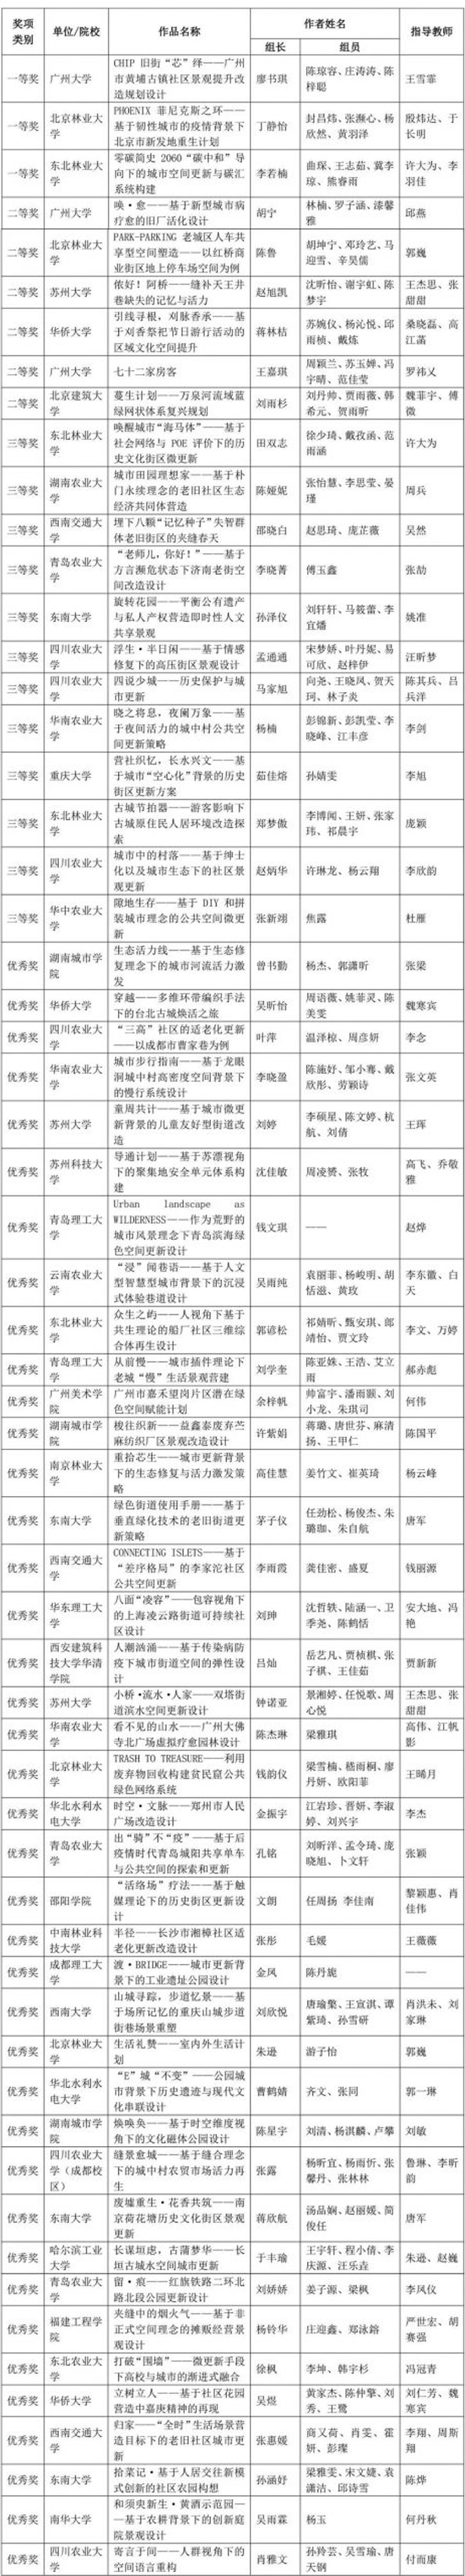 2021年中国风景园林教育大会学生设计竞赛及本科毕业设计征集获奖名单(图3)